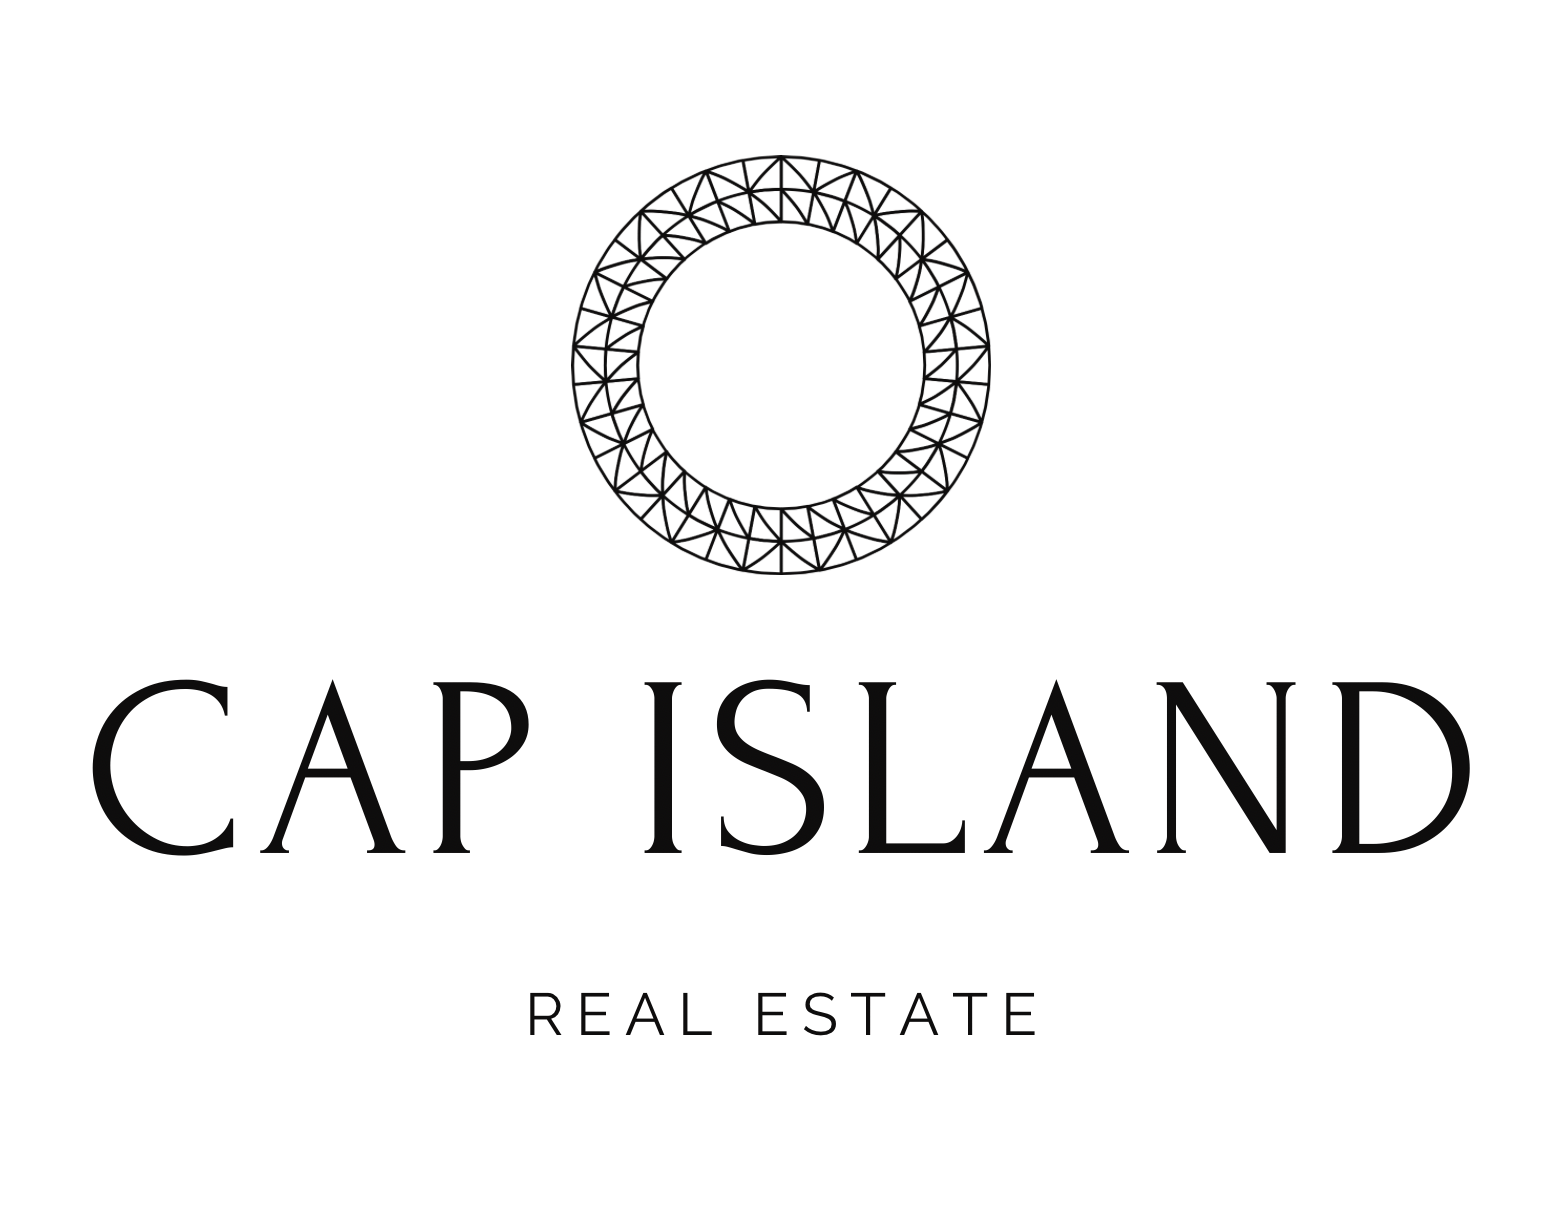 Cap Island